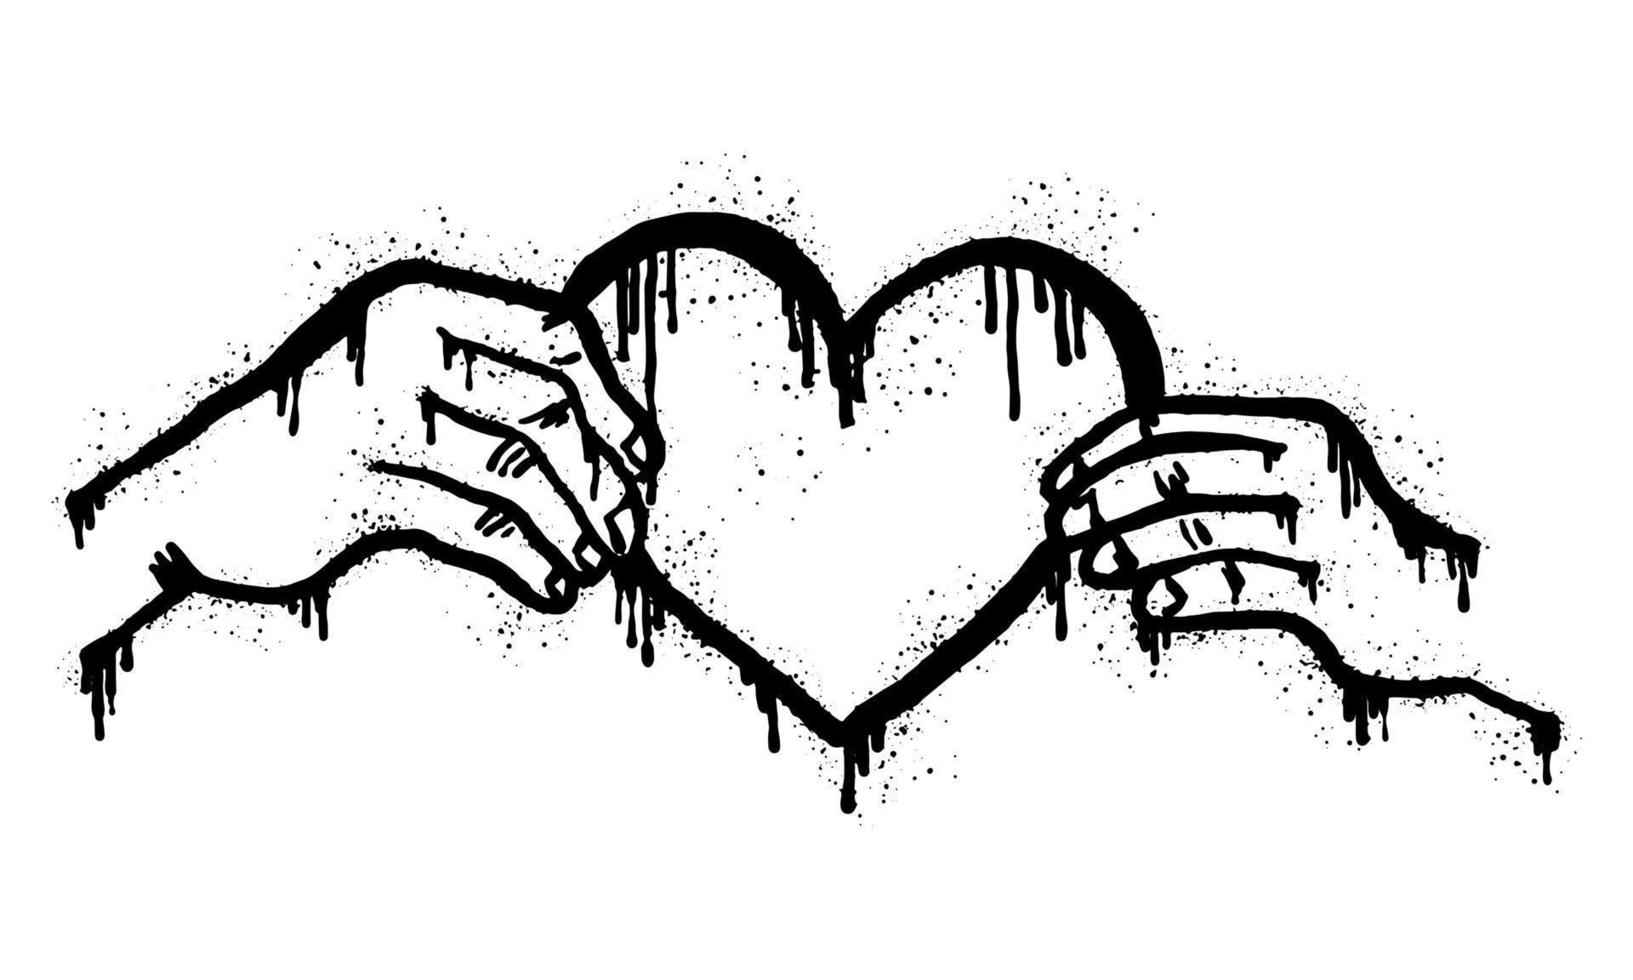 graffitis peints à la bombe mains tenant un coeur en noir sur blanc.donnez et partagez votre amour aux gens. symbole de goutte à goutte de coeur. isolé sur fond blanc. illustration vectorielle vecteur